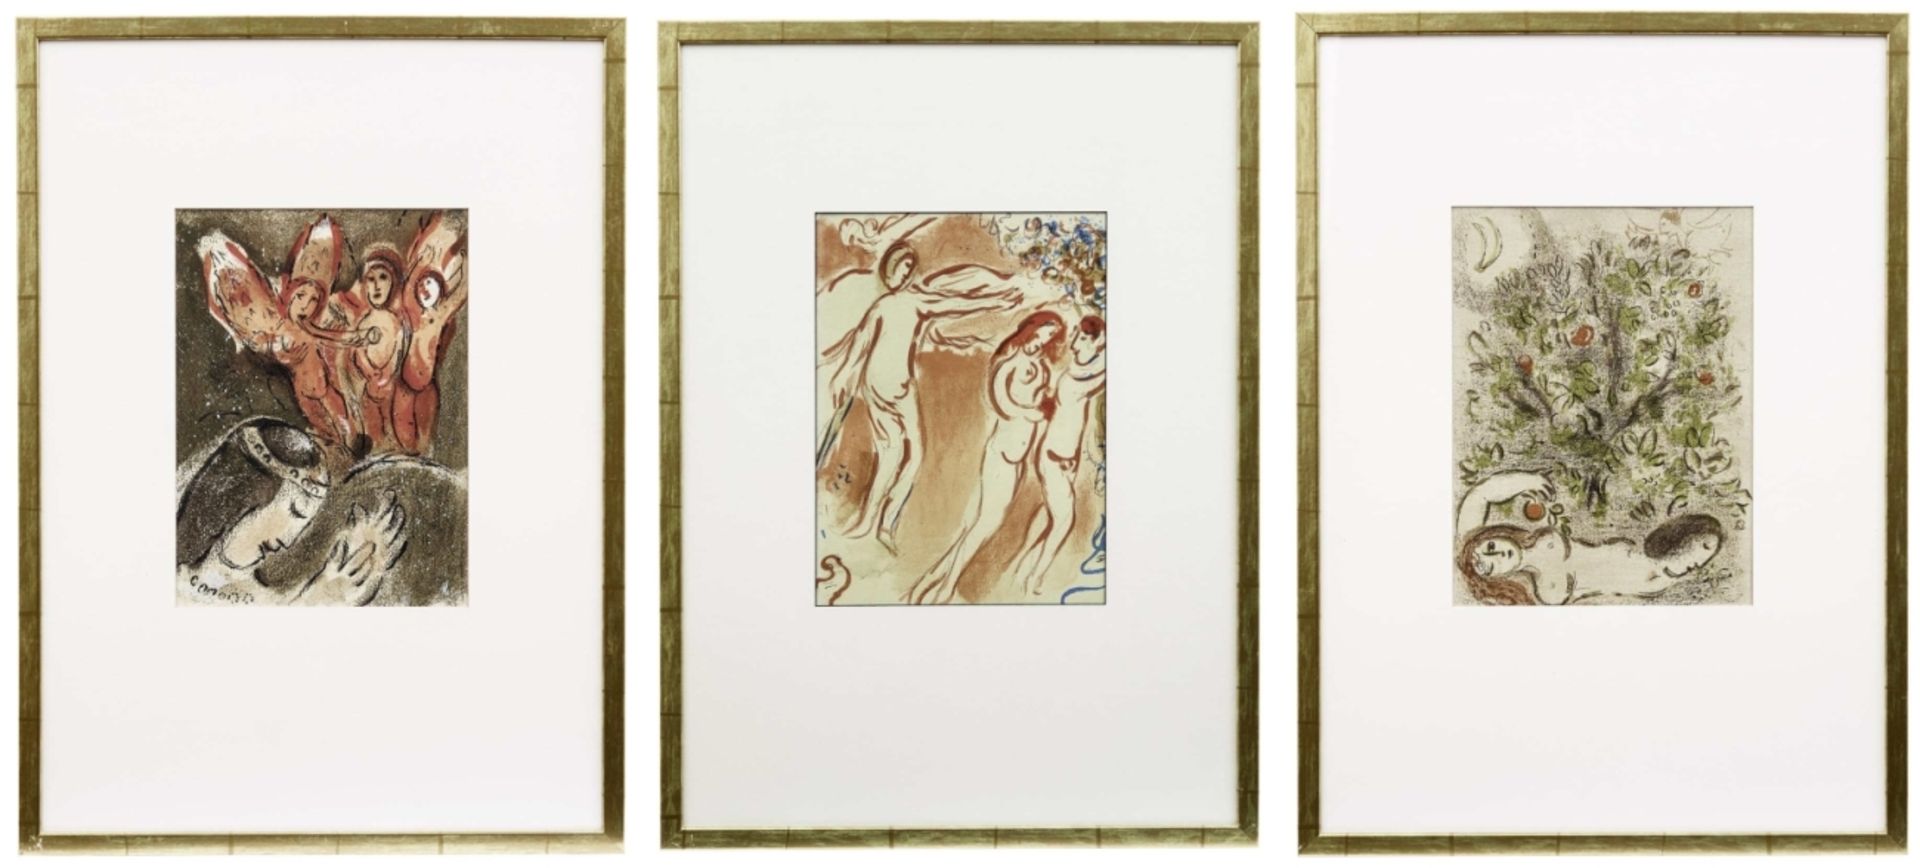 Chagall, Marc: Drei Illustrationen aus "Dessin pour la Bible"